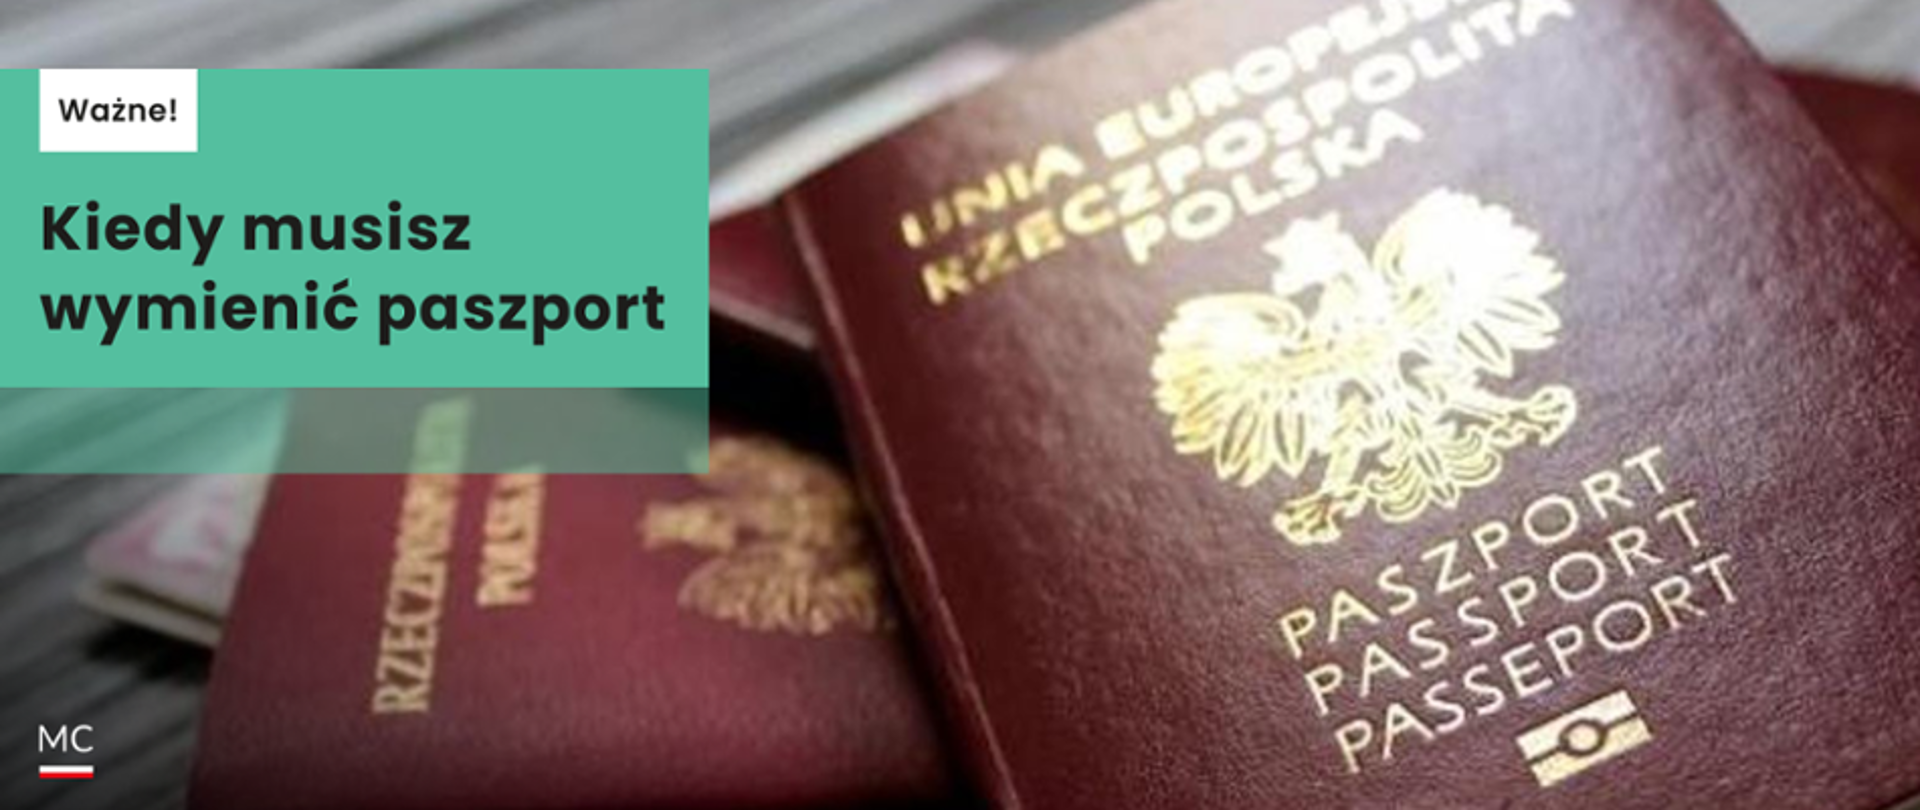 ważność paszportu